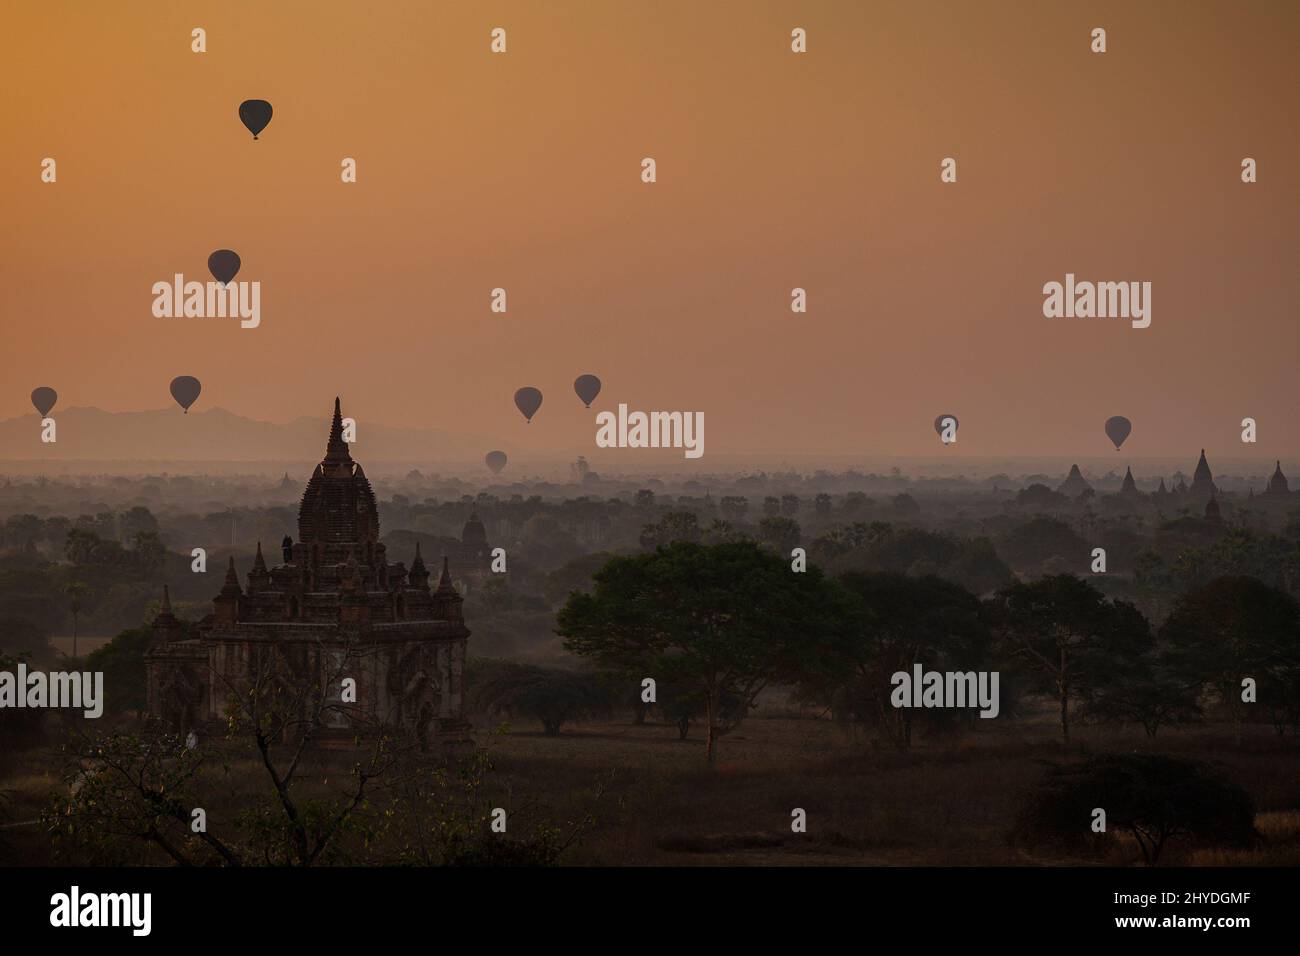 Bella vista di palloncini d'aria calda sopra templi e pagode all'antica pianura di Bagan in Myanmar (Birmania) all'alba. Foto Stock